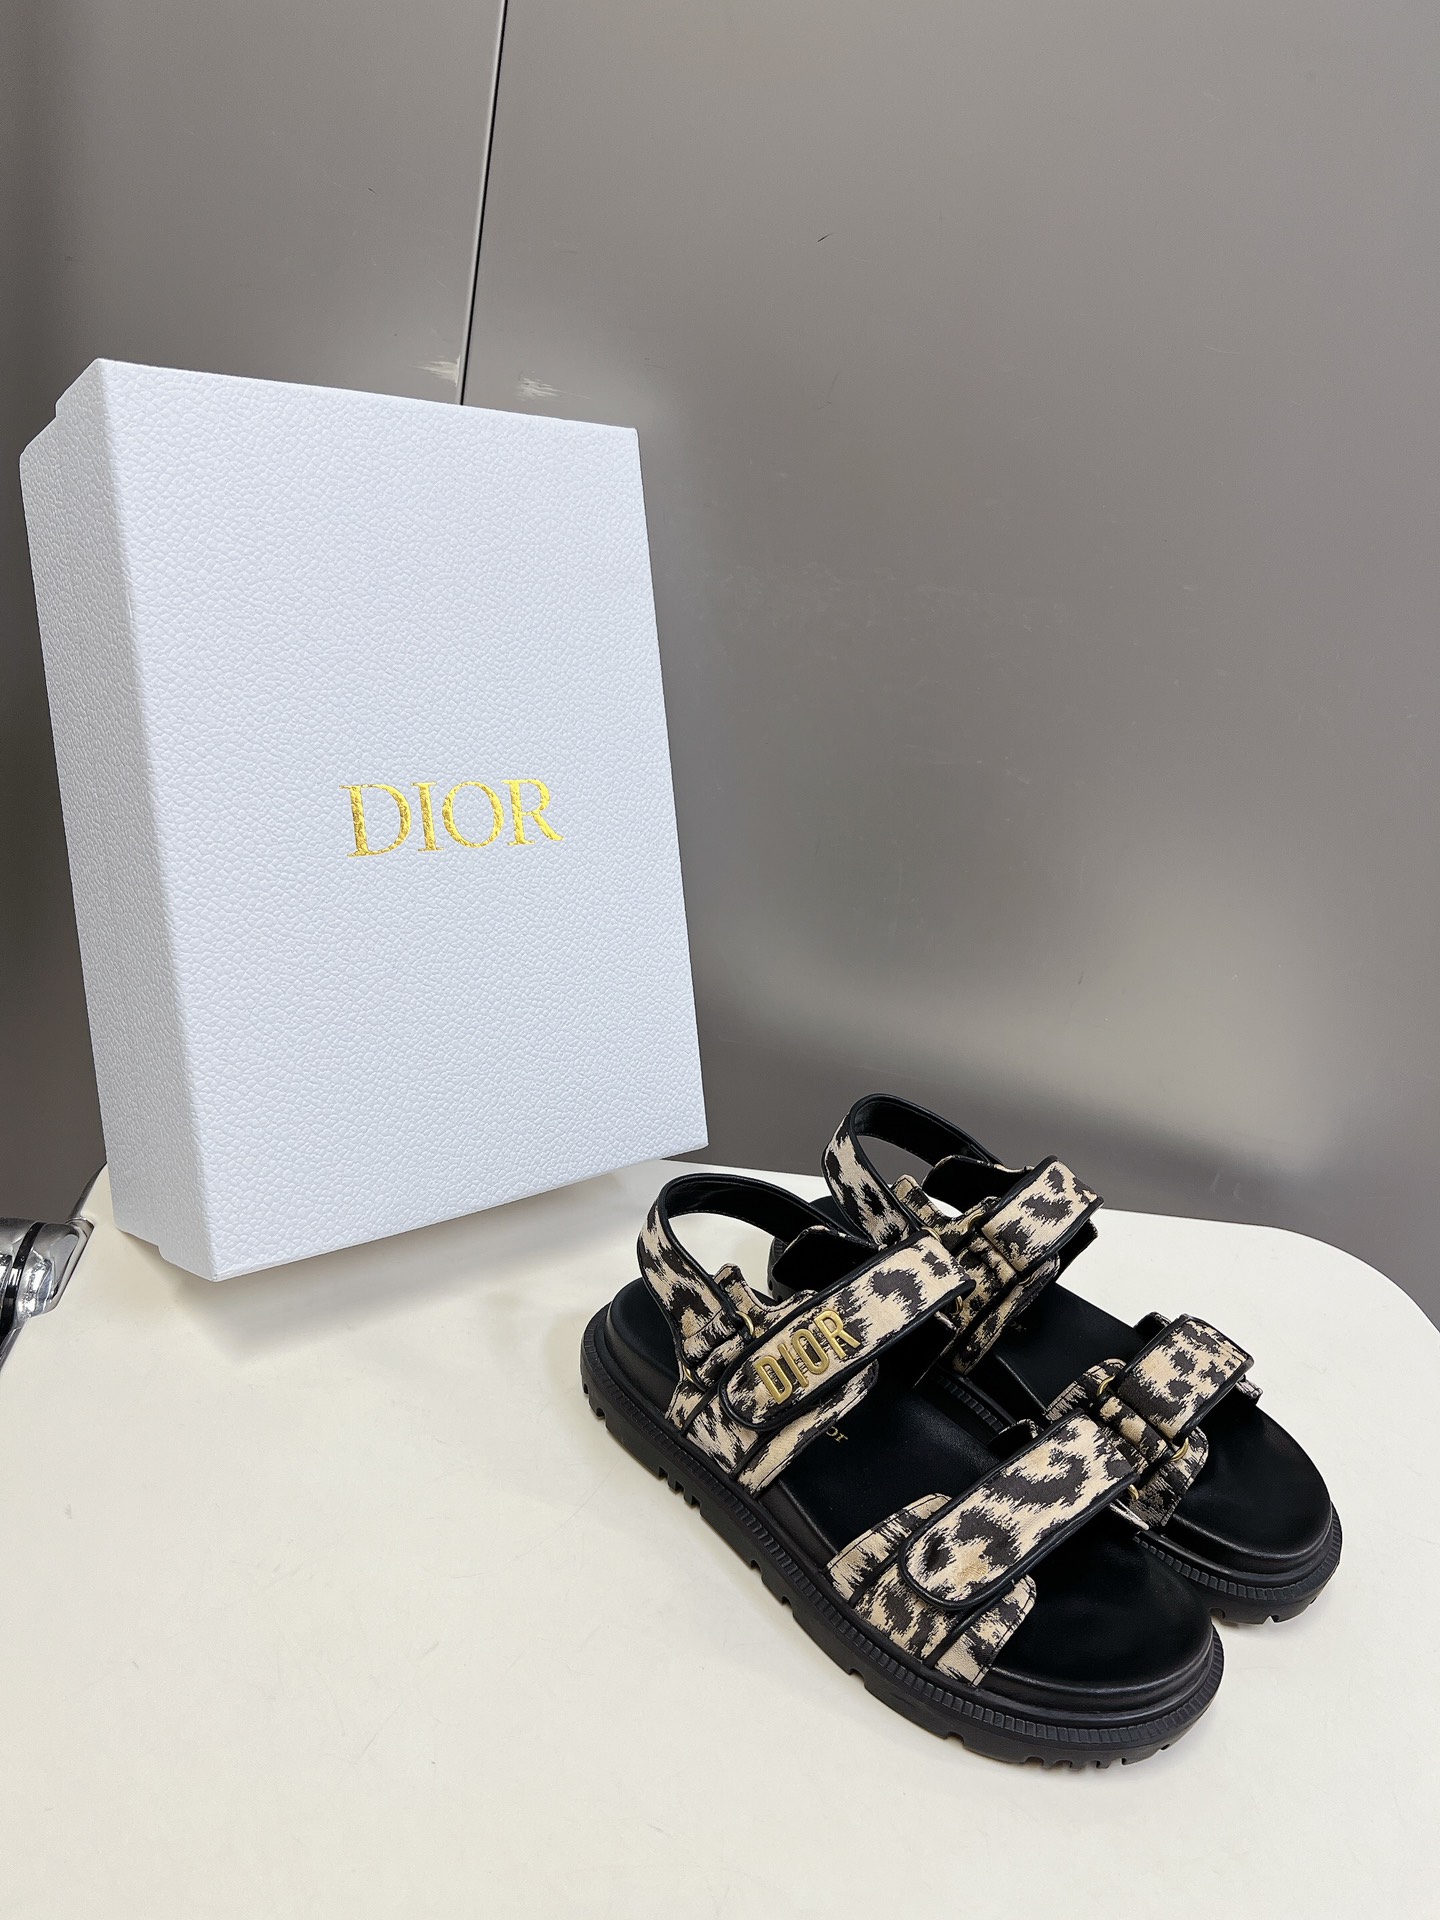 Dior迪奥春夏最新款魔术贴凉鞋超多明星网红种草经典的版型设计上迪奥LOGO五金点缀超好看超百搭上脚非常